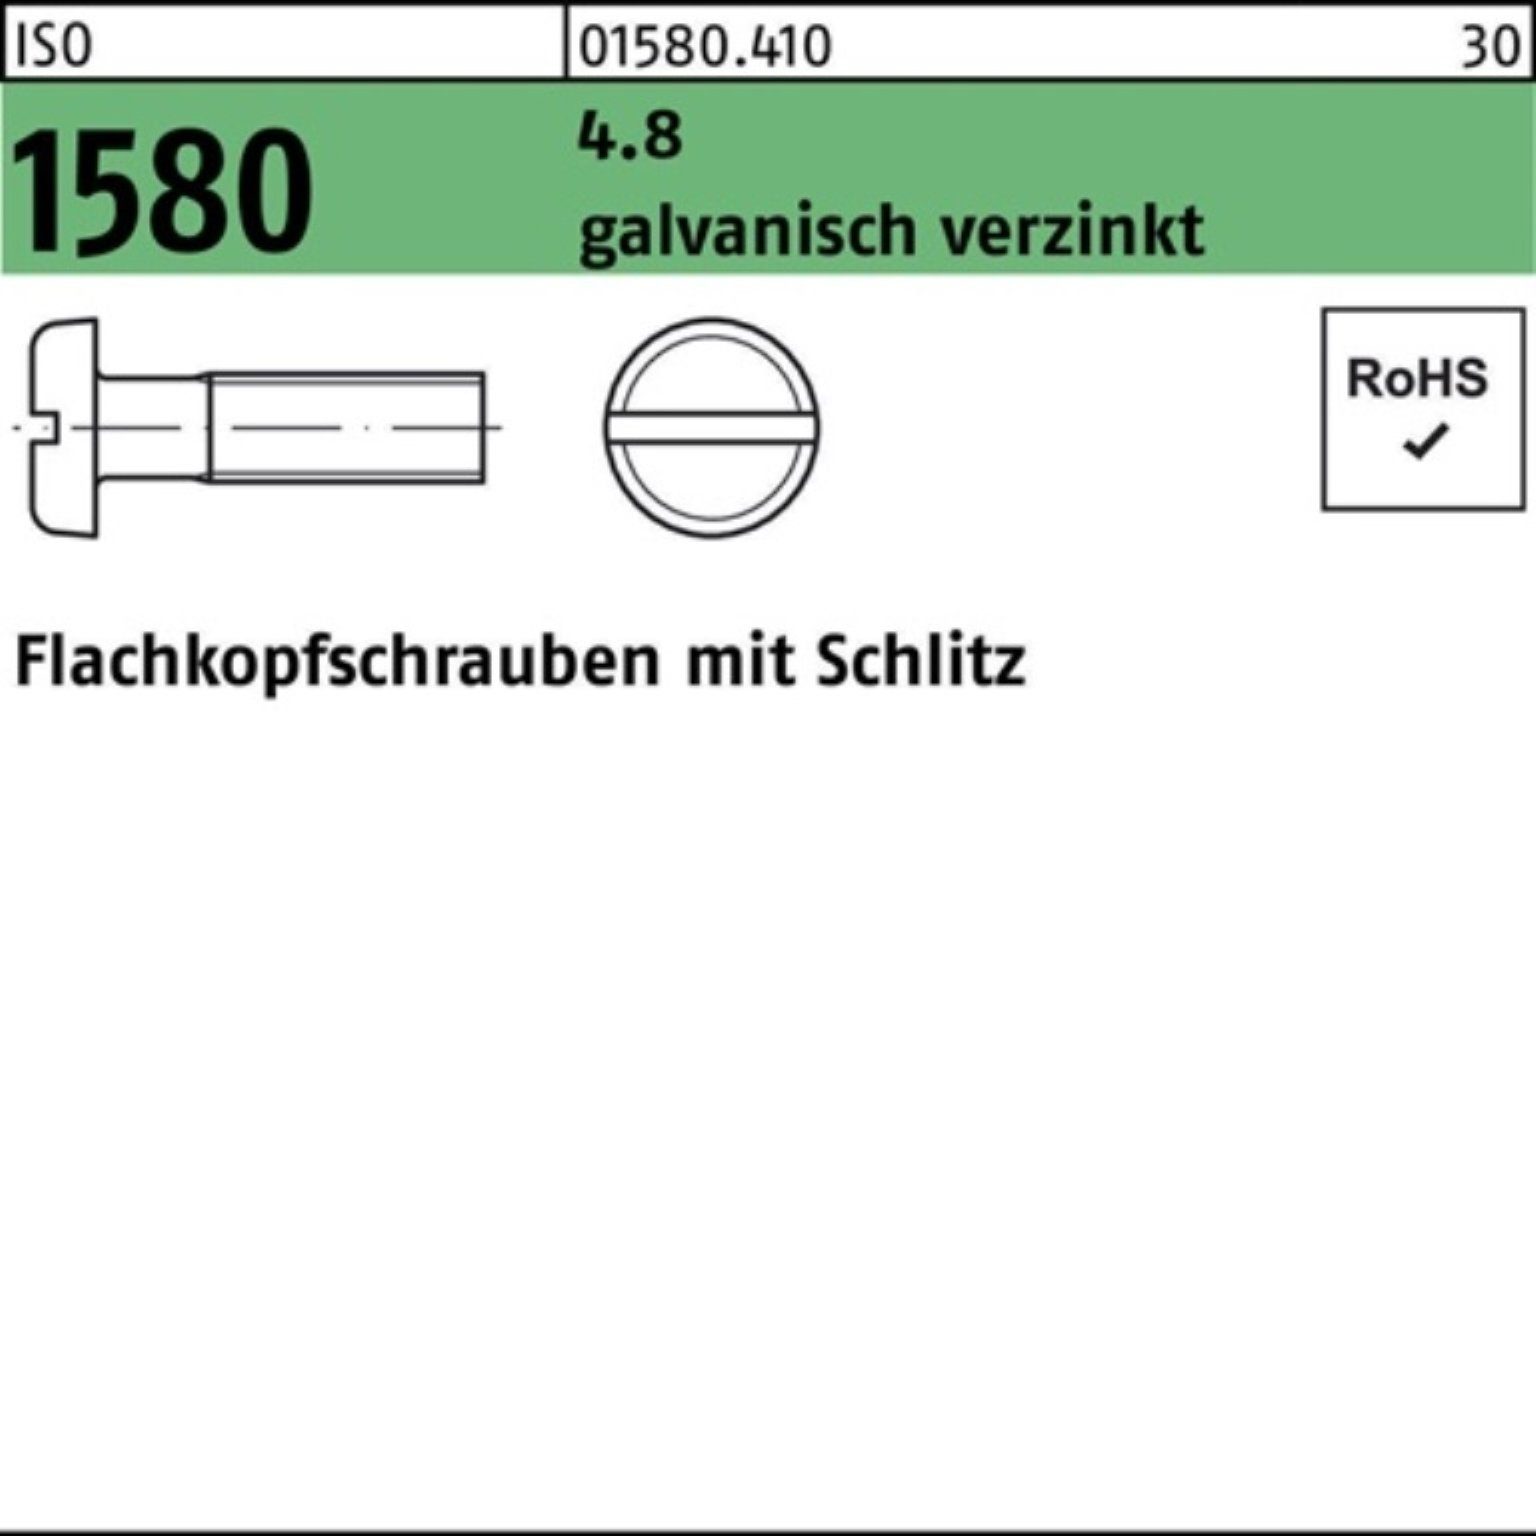 Reyher M3x Schlitz galv.verz. 4.8 200er ISO Schraube Pack 1580 20 40 Flachkopfschraube